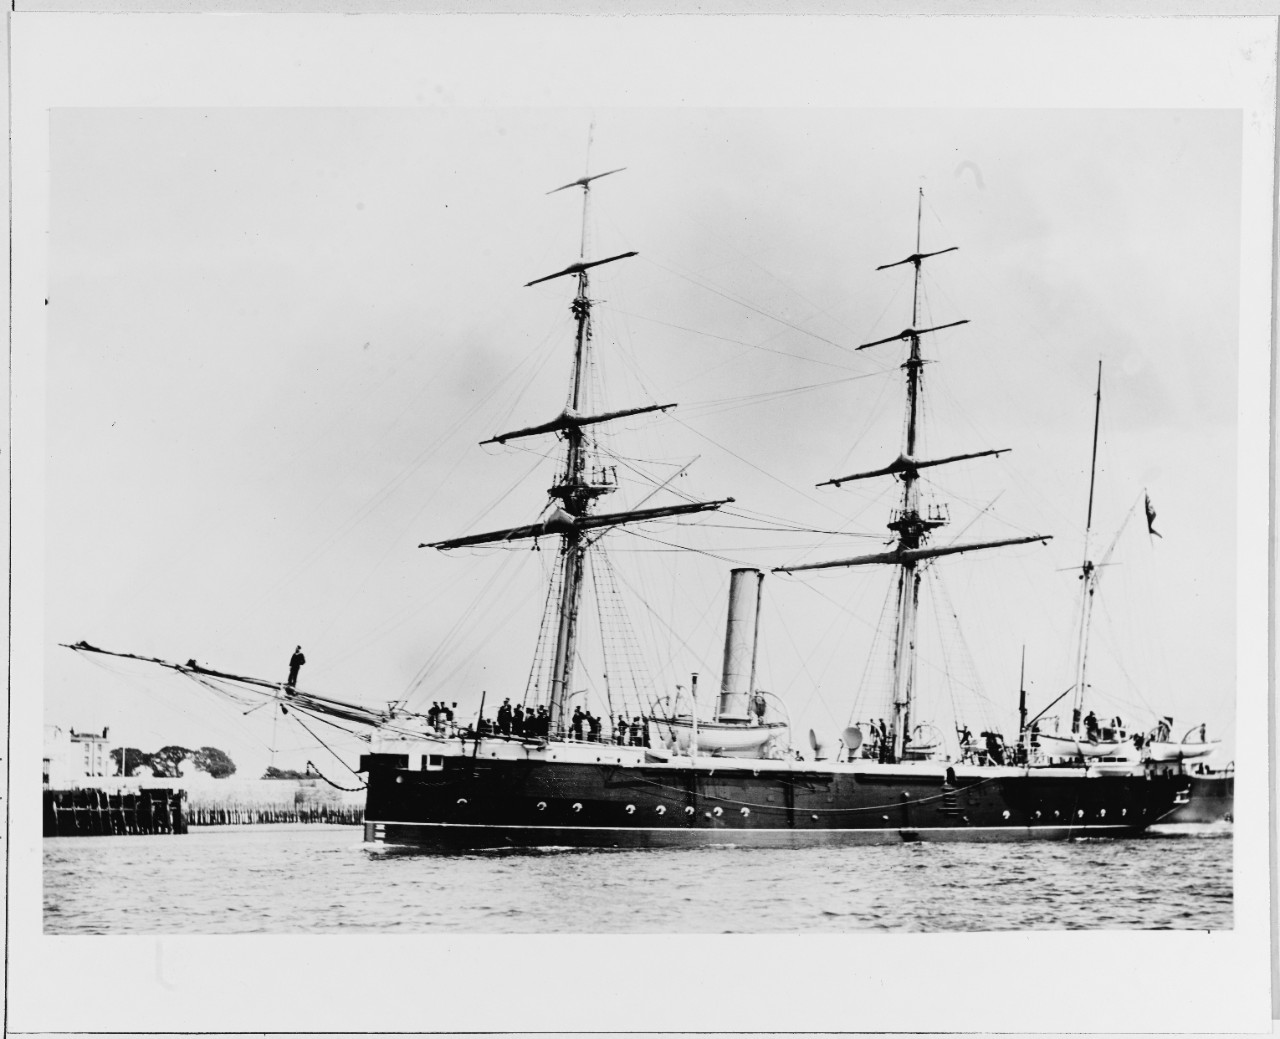 HMS RACER (British sloop, 1884)